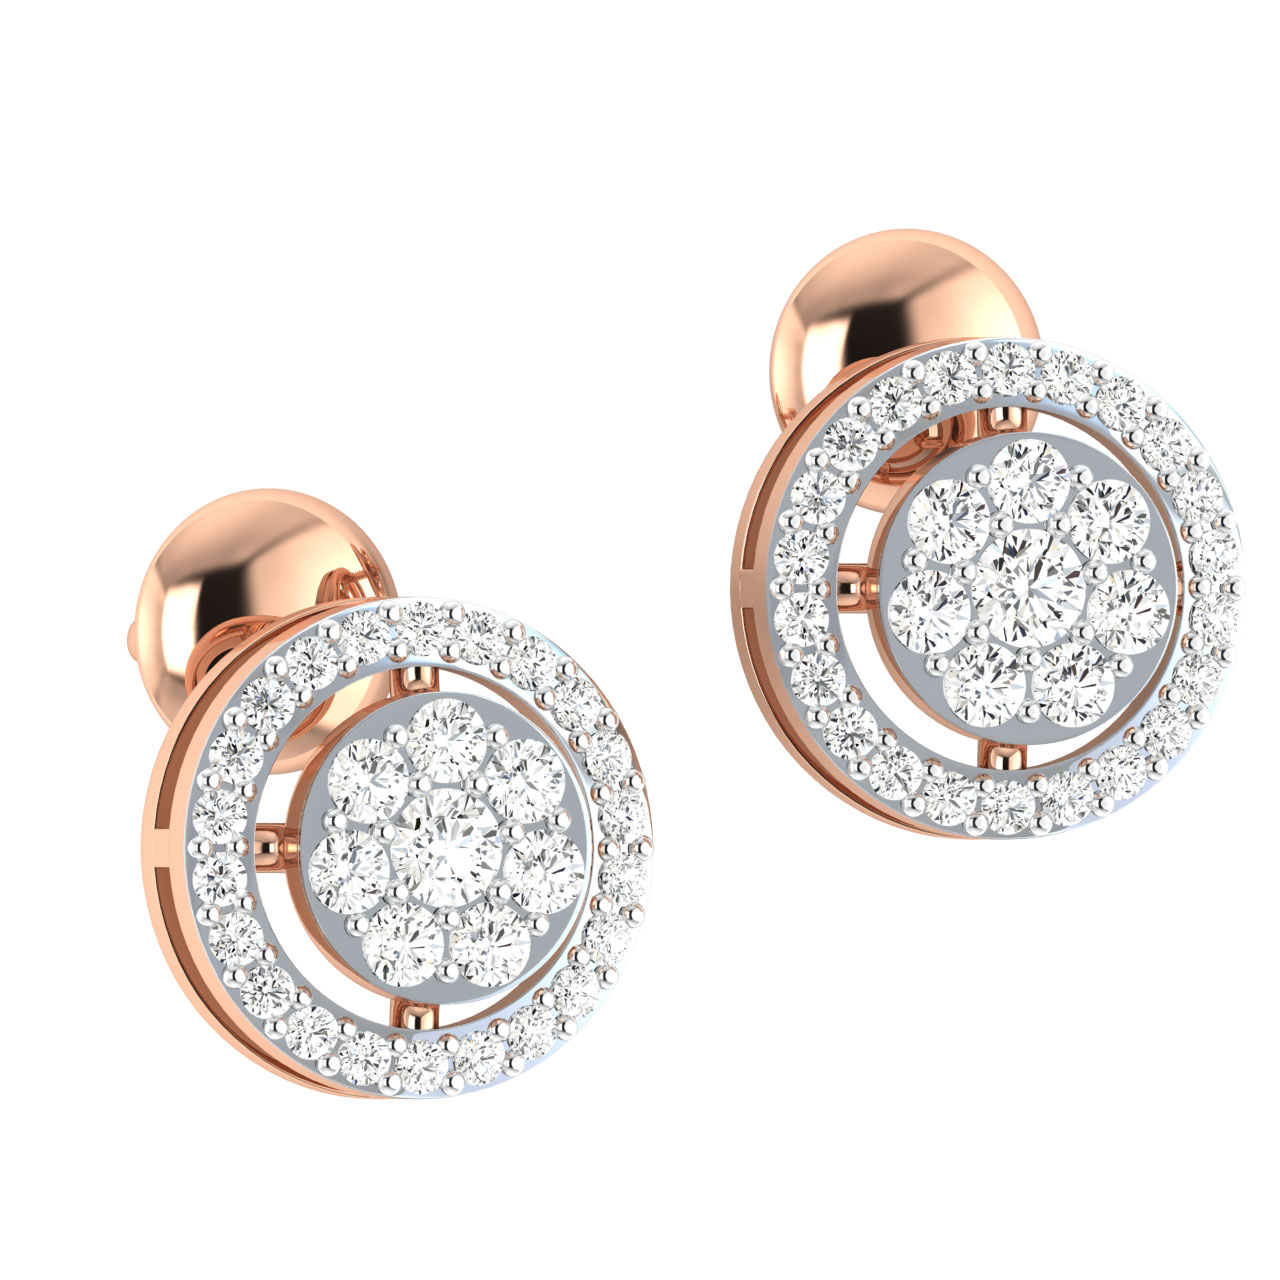 Elegant Round Diamond Stud Earrings